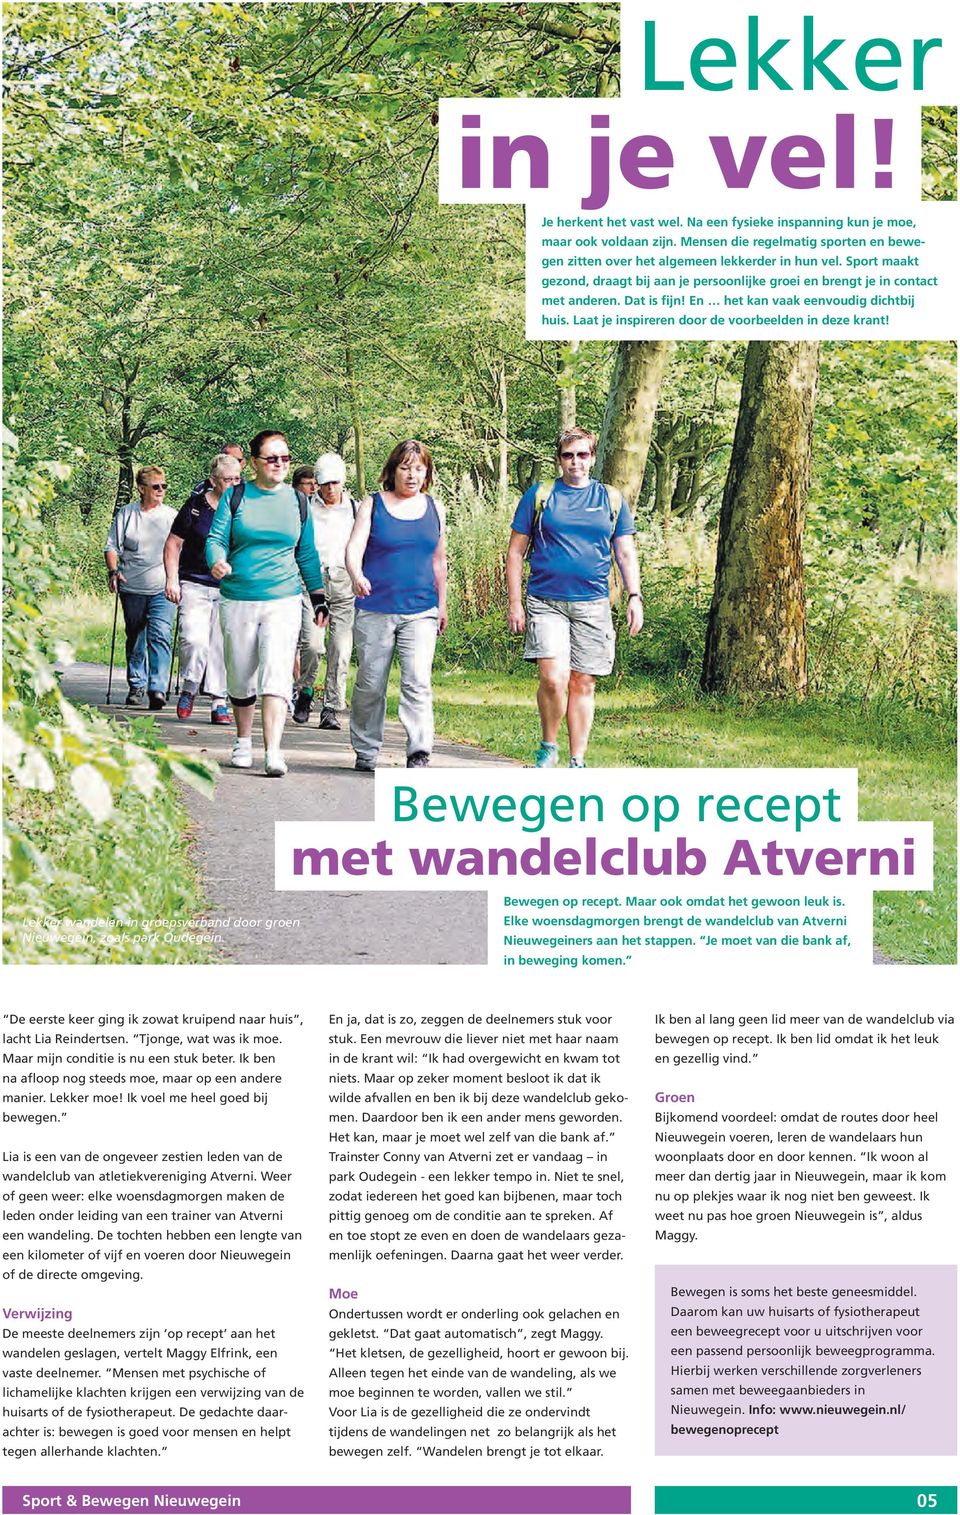 Laat je inspireren door de voorbeelden in deze krant! Lekker wandelen in groepsverband door groen Nieuwegein, zoals park Oudegein. Bewegen op recept met wandelclub Atverni Bewegen op recept.